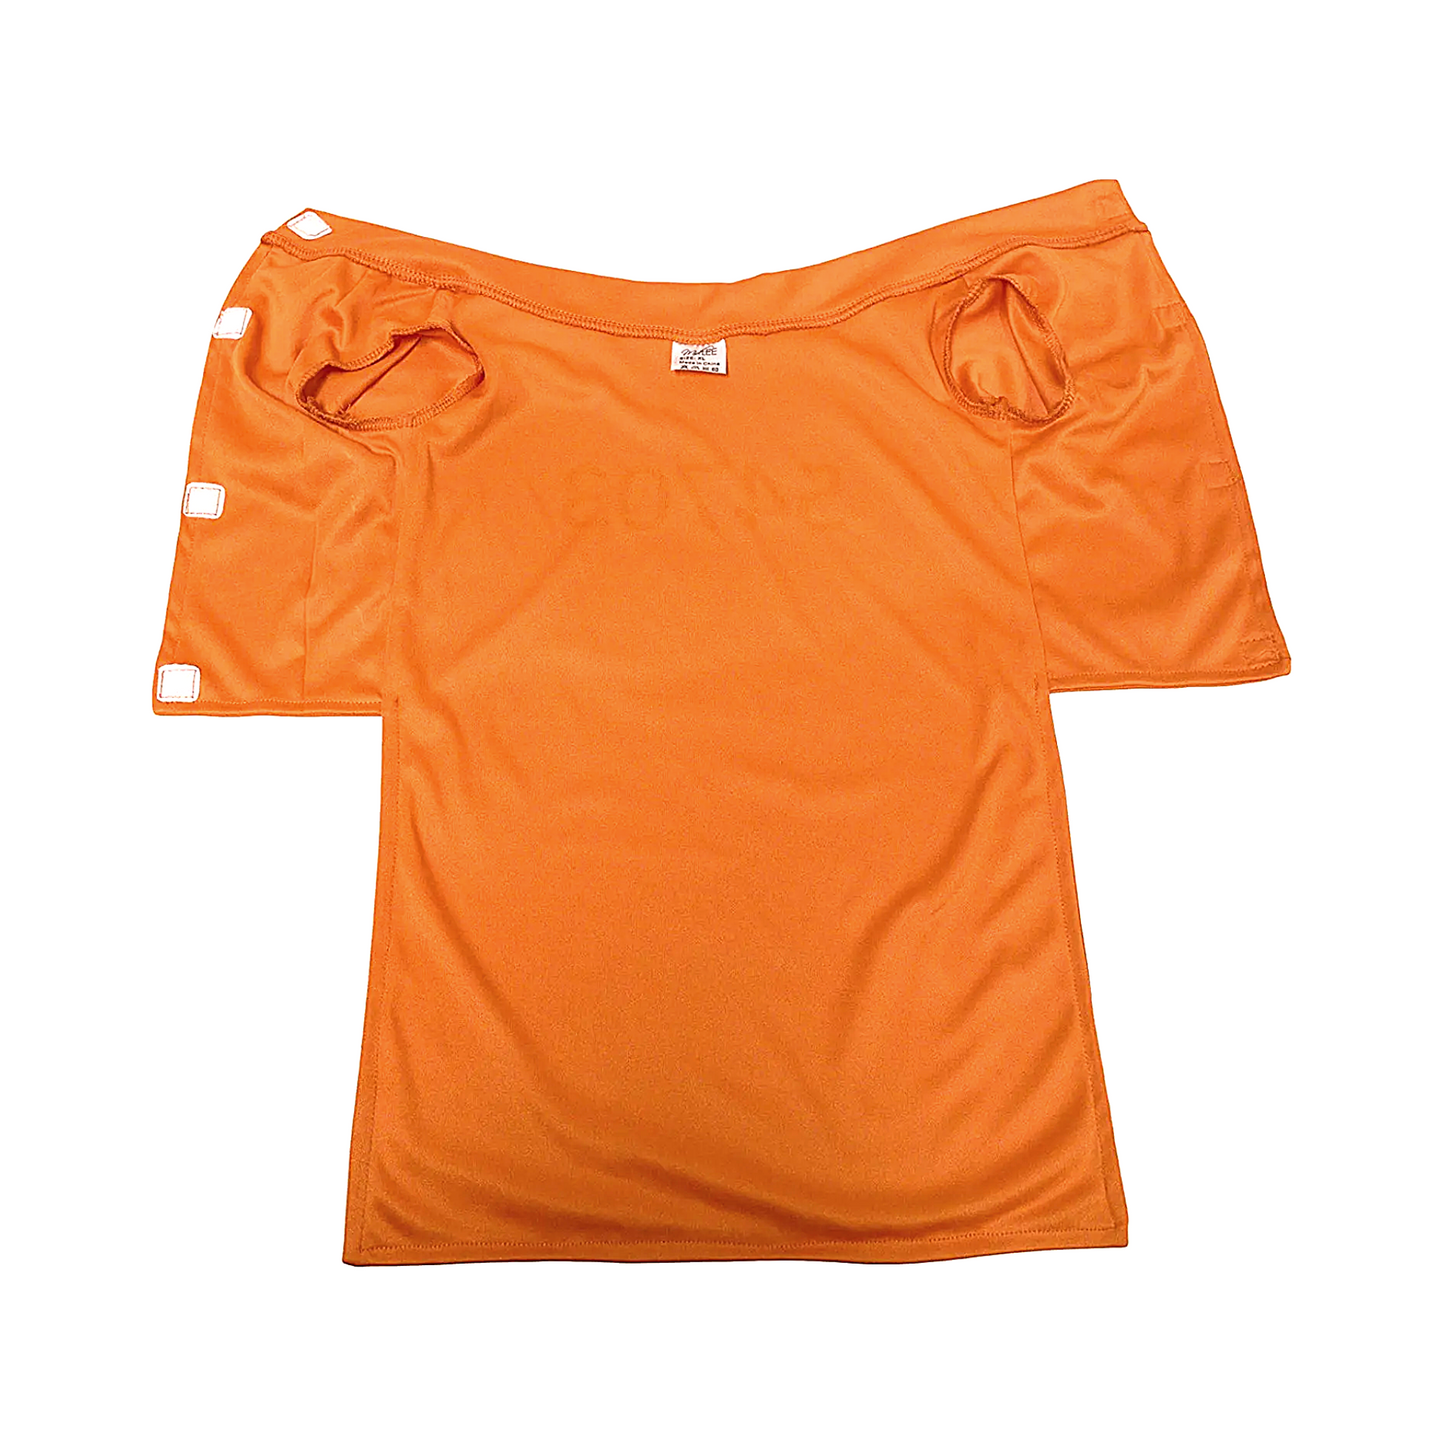 Midlee Orange Prisoner Costume